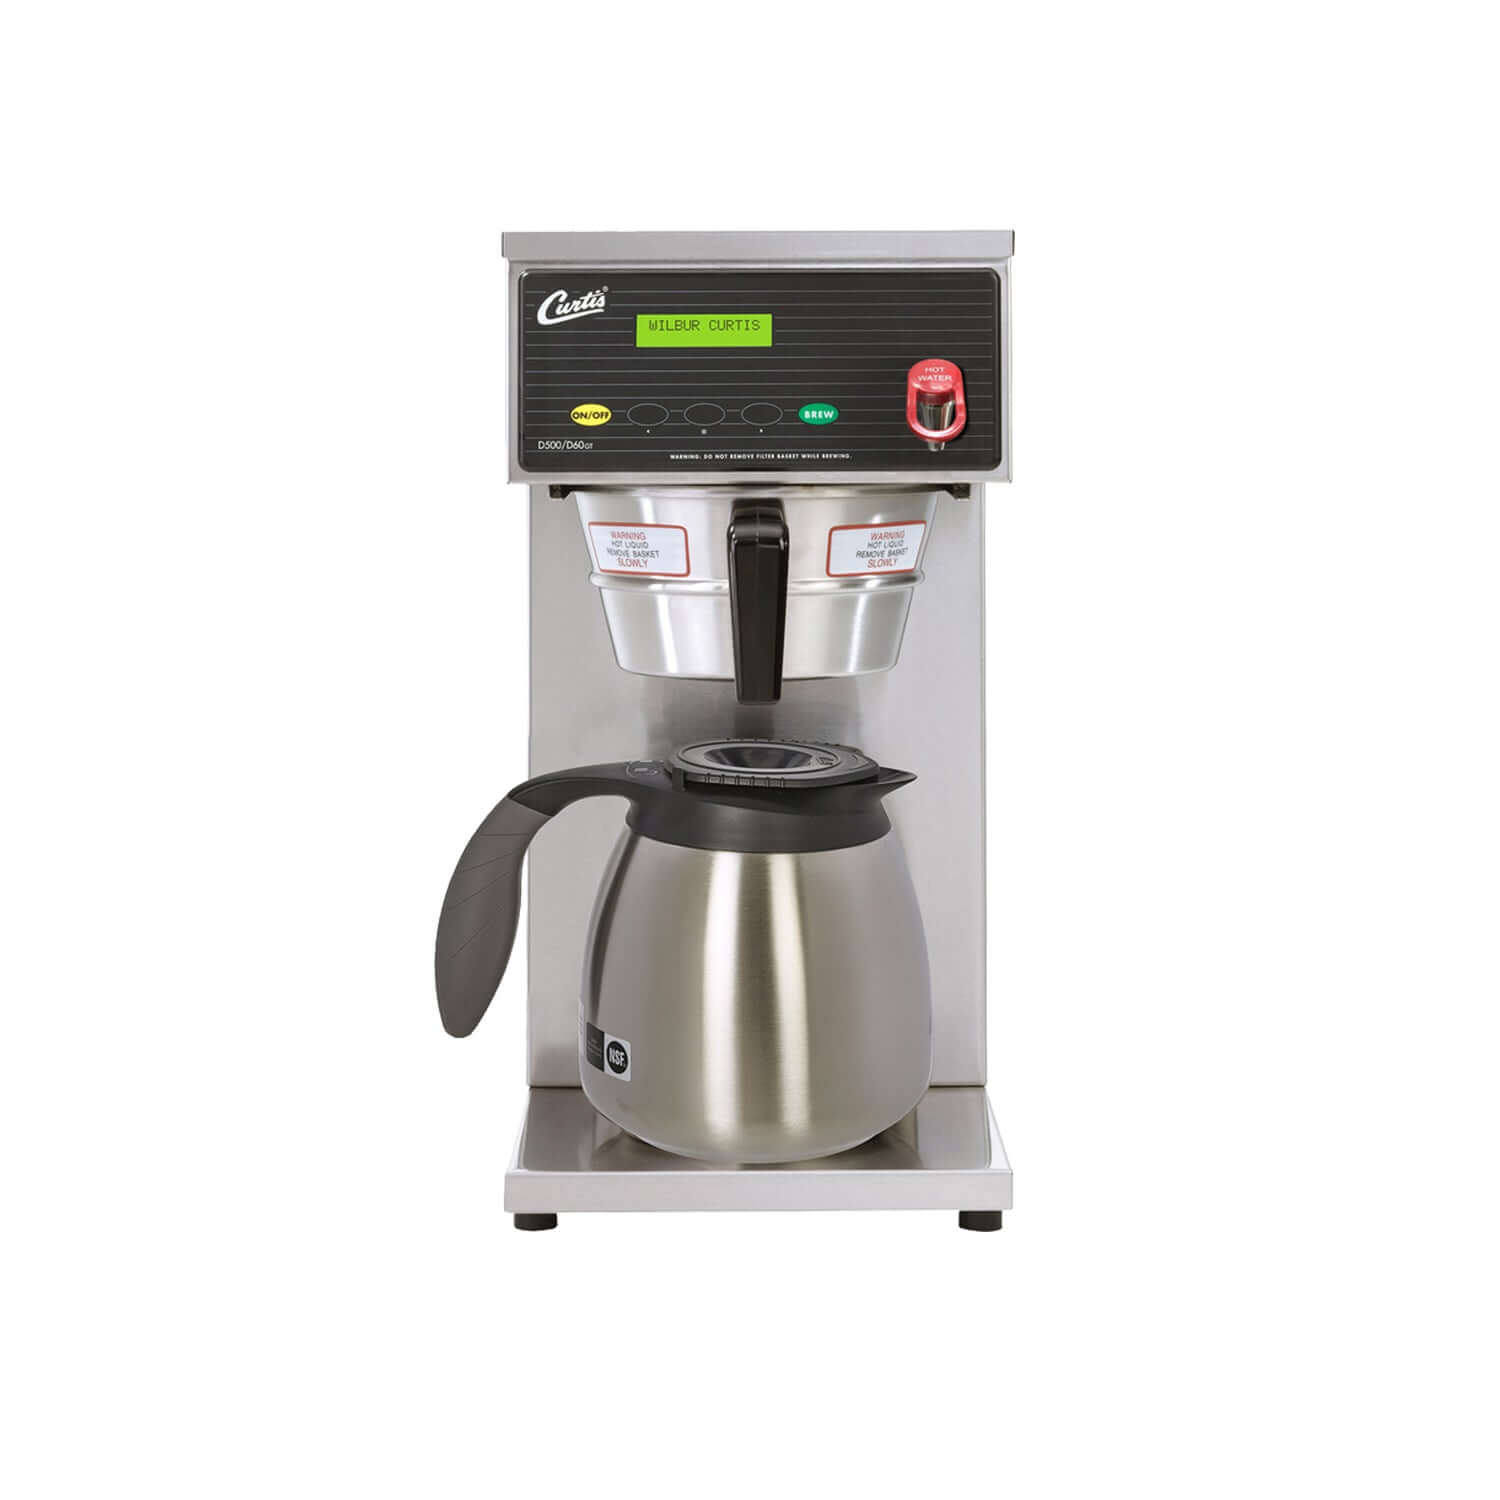 Curtis - D60GT52 Digital Coffee Maker